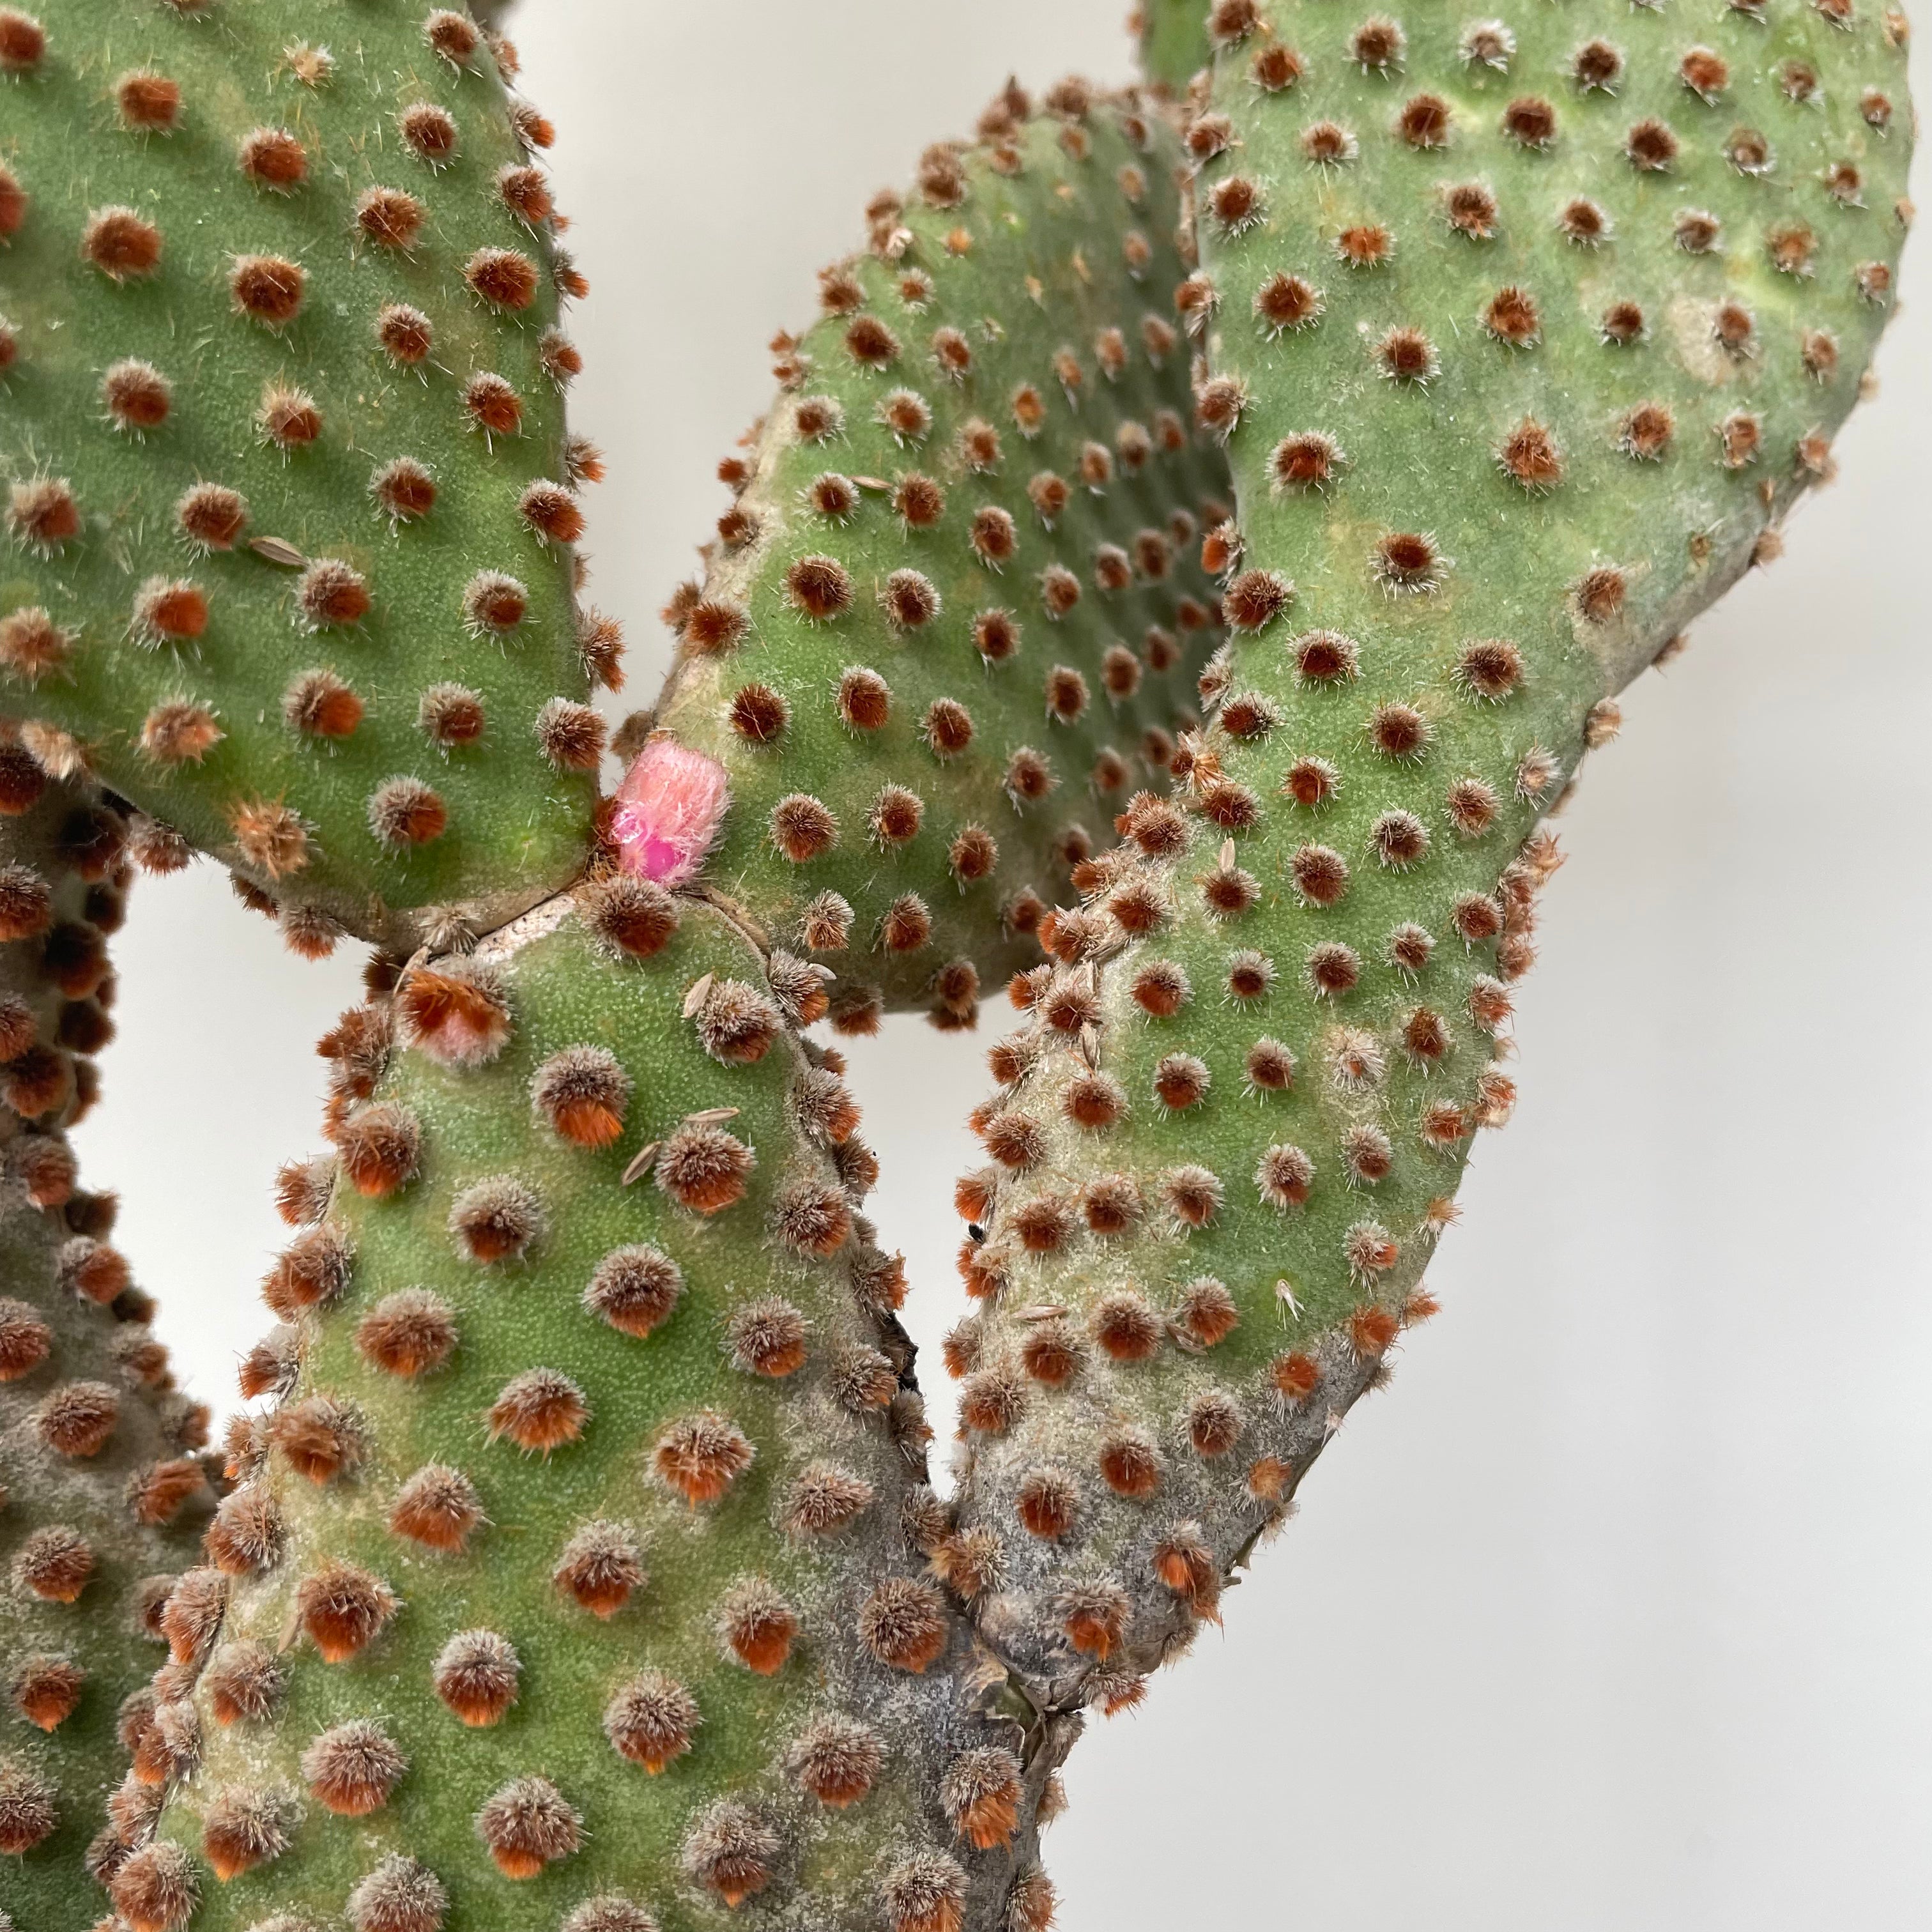 Opuntia Cactus - Prickly Pear Cactus